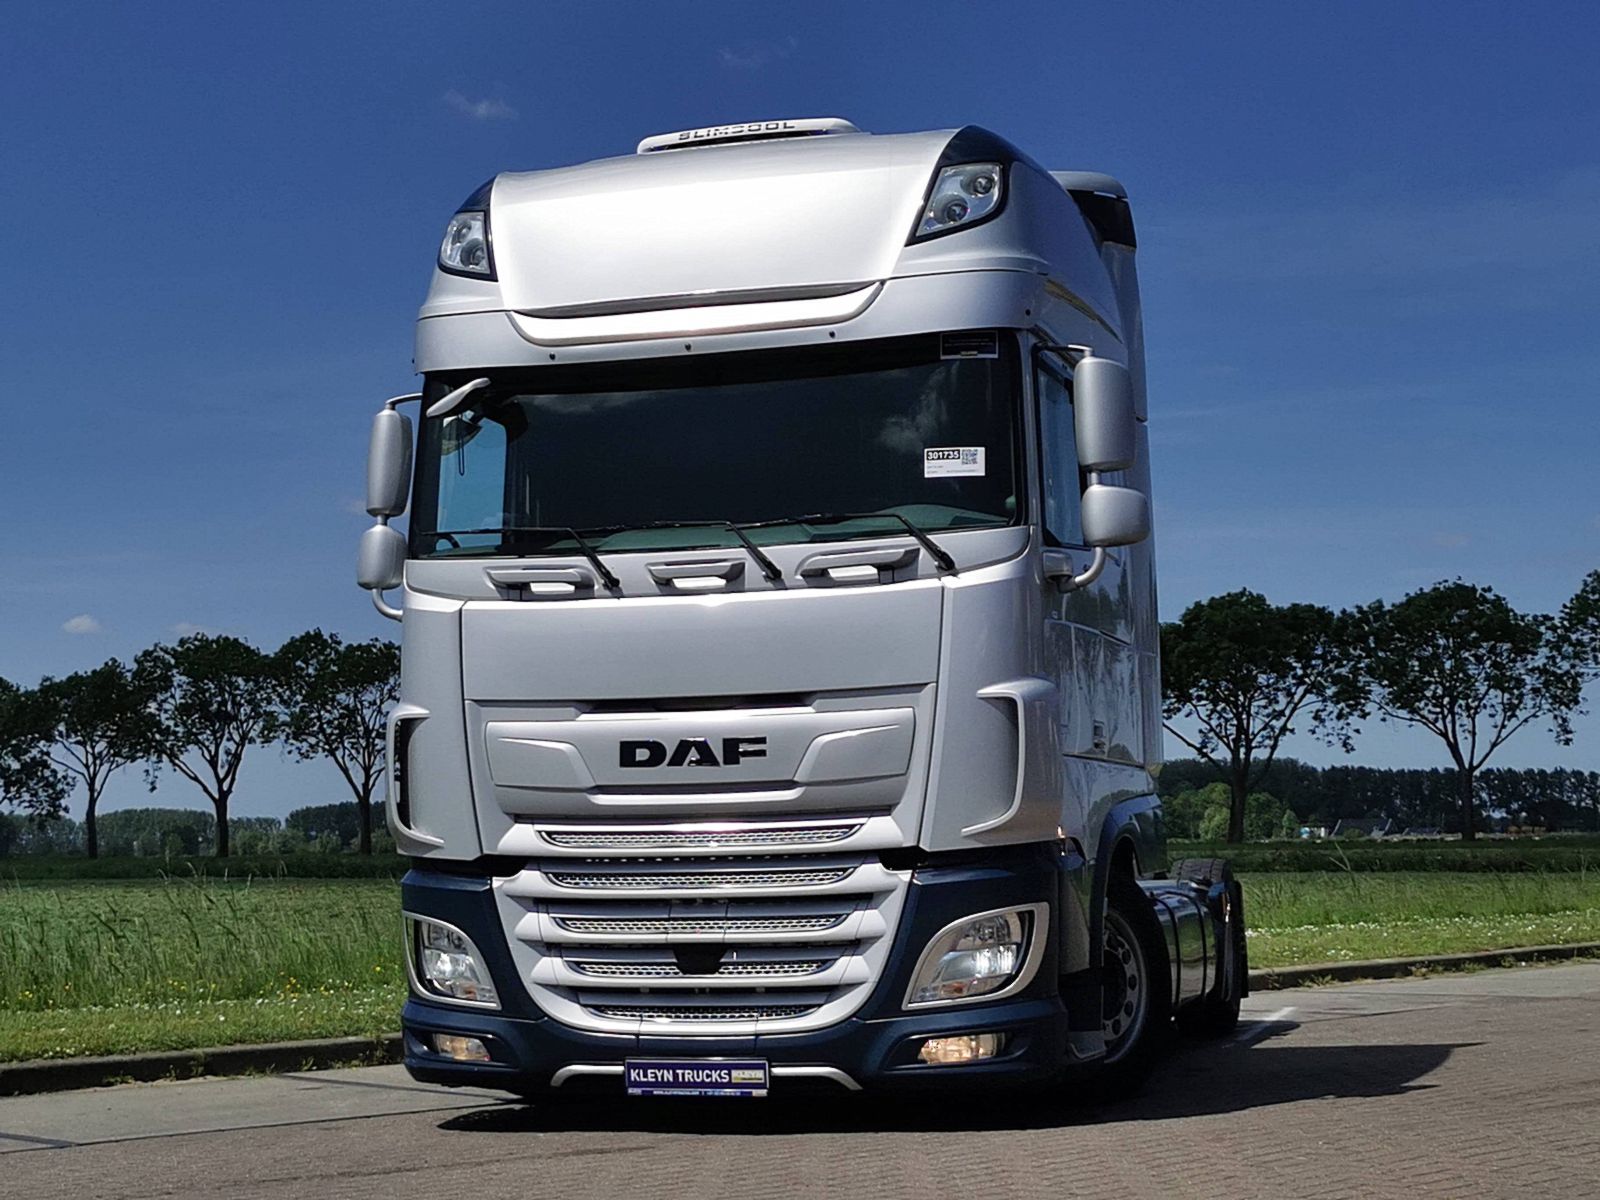 DAF TRUCKS🚚 - Archive - TruckersMP Forum